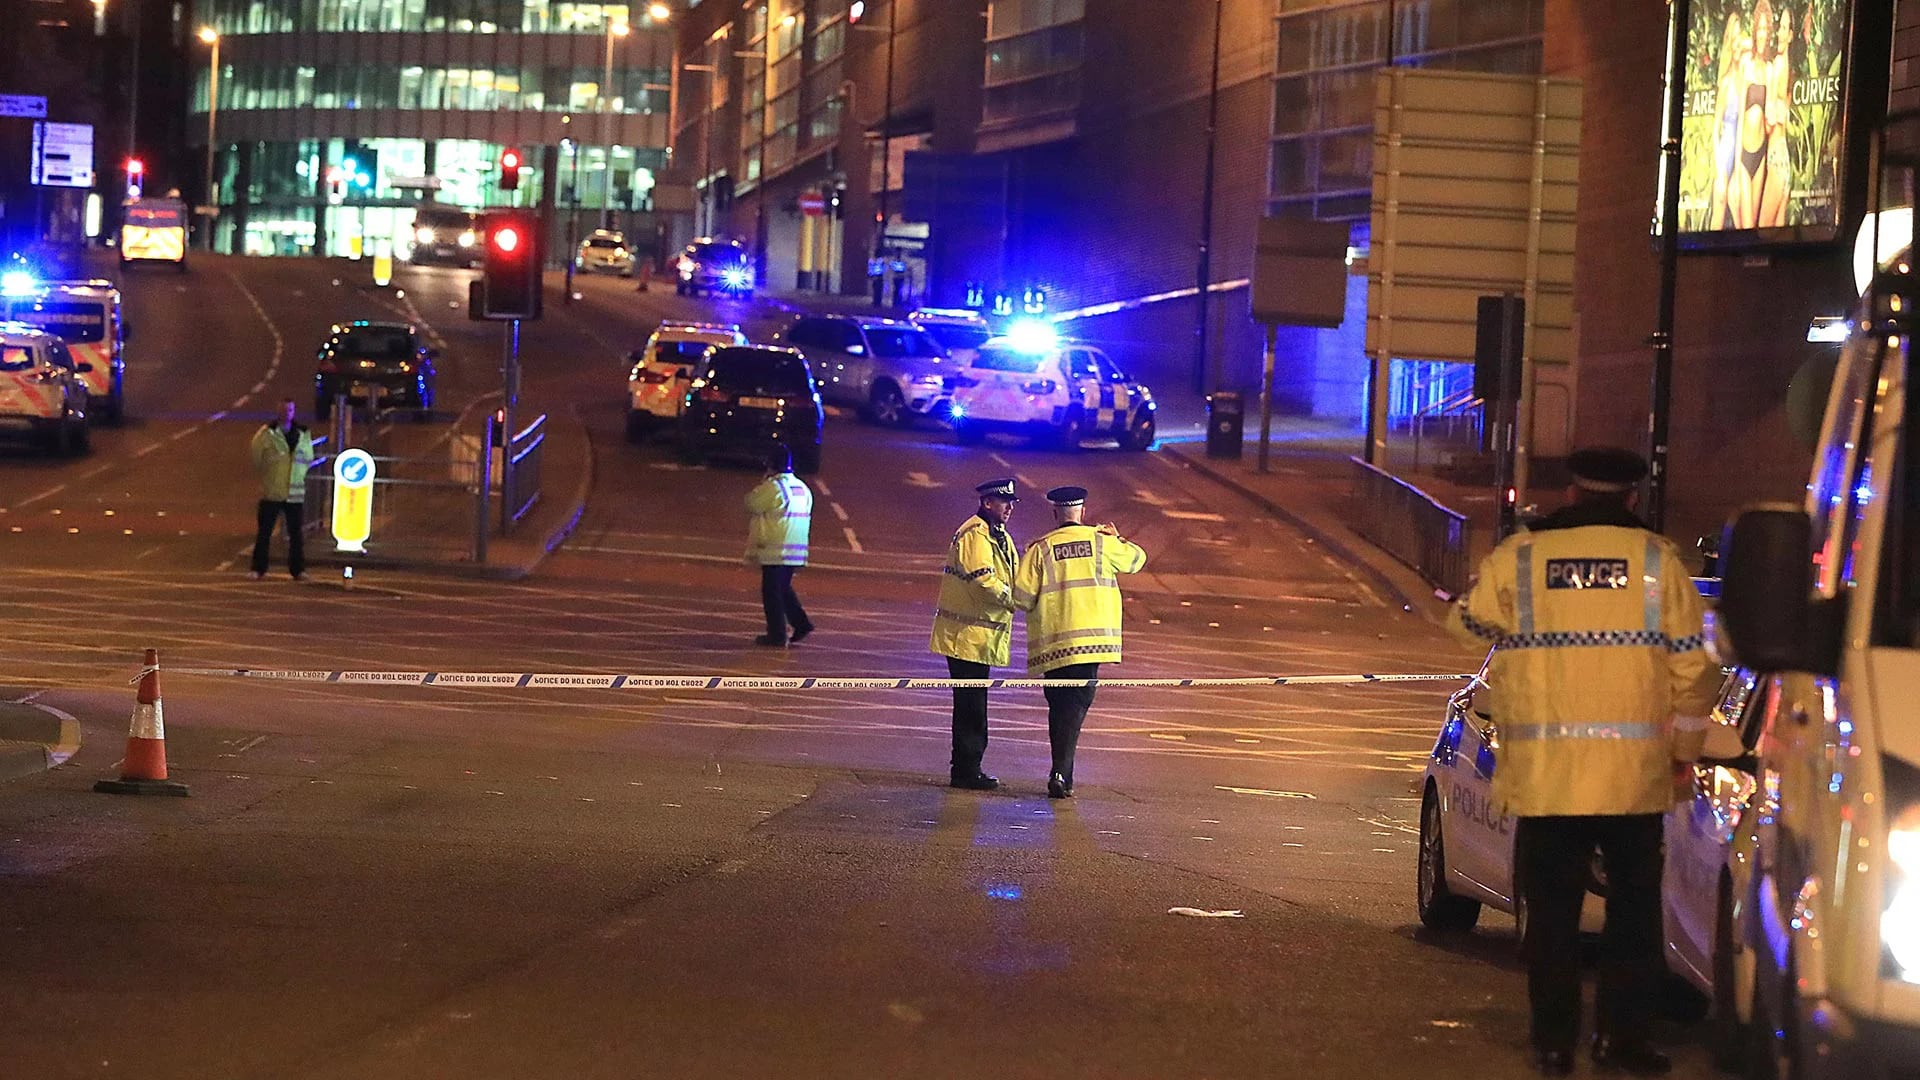 Las autoridades advierten a la gente que se mantenga alejada del Manchester Arena para evitar que aumente el número de heridos si se replica otro incidente similar (AP)